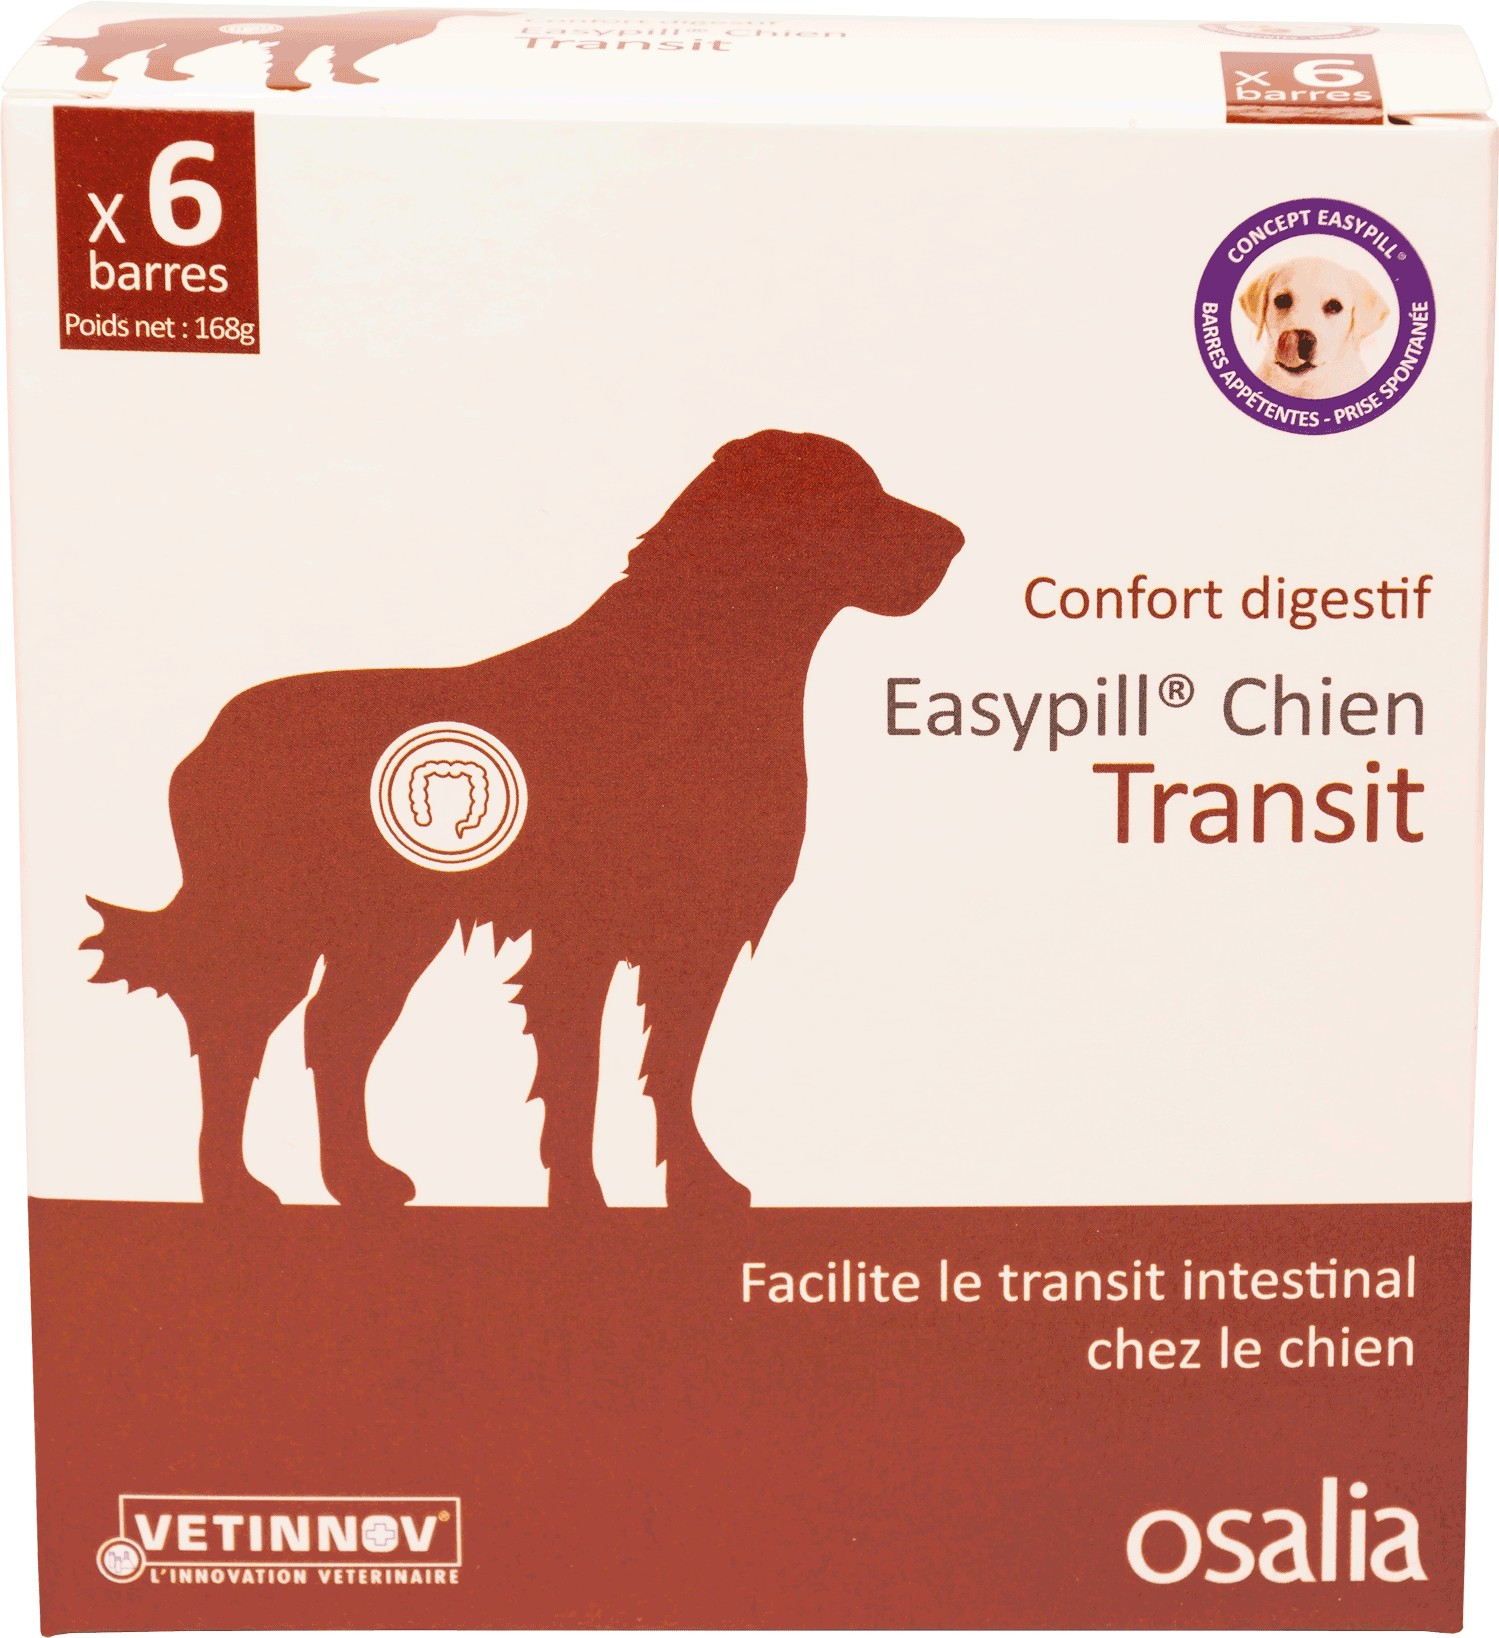 EASYPILL Transit für Hunde